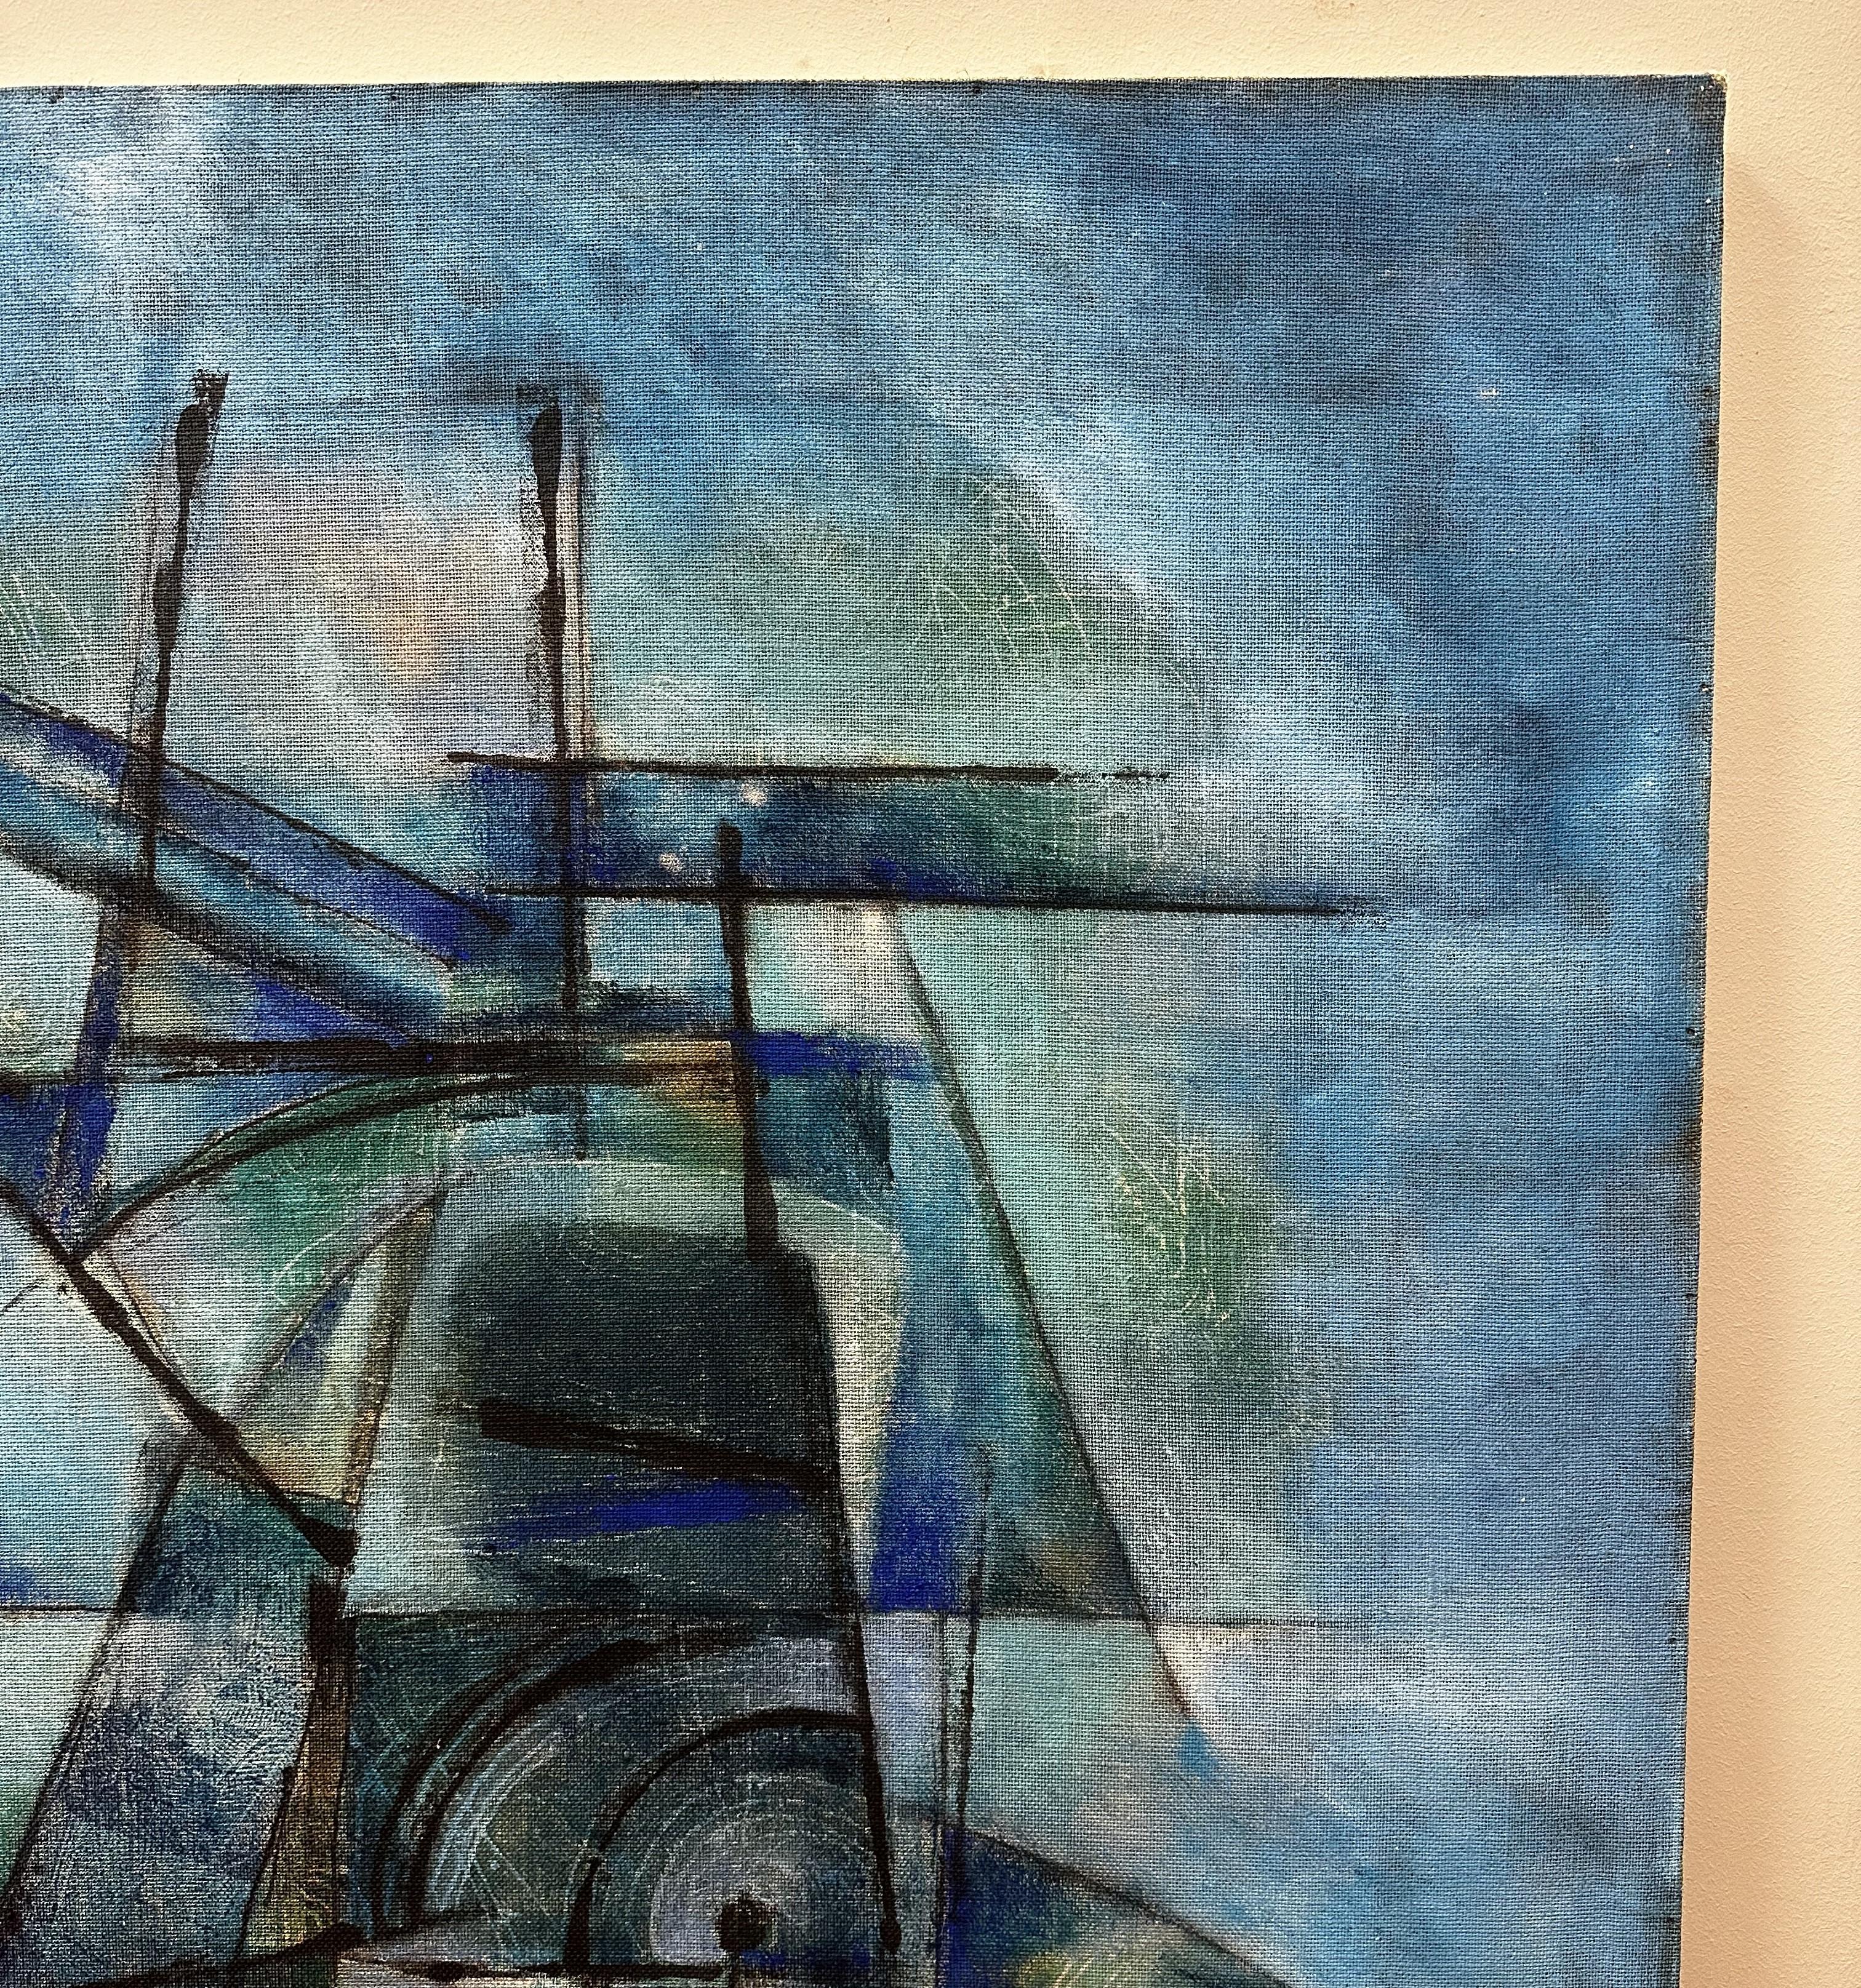 Exceptionnelle huile sur toile du peintre français Serge Arnoux (1933-2014). Cette œuvre absolument moderne se caractérise par la couleur bleue intense du fond, sur lequel se détache une composition abstraite complexe, avec une prédominance de